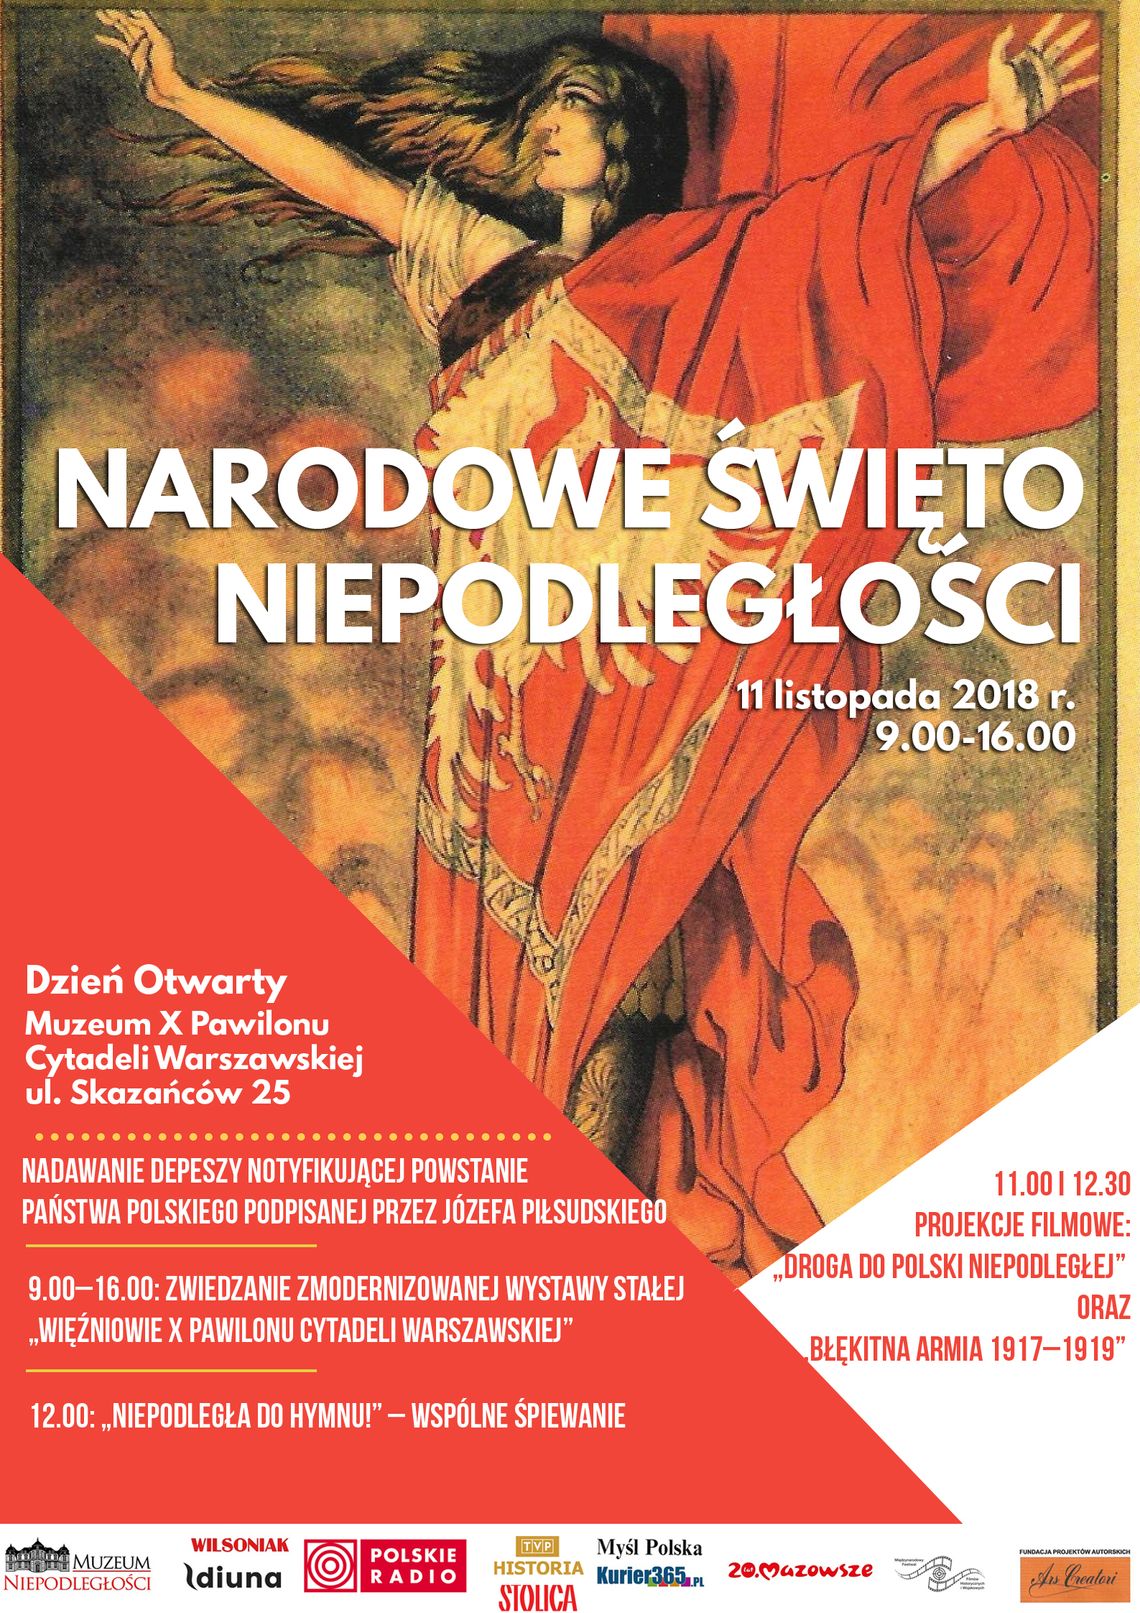 Muzeum Niepodległości w Warszawie zaprasza na Dzień Otwarty